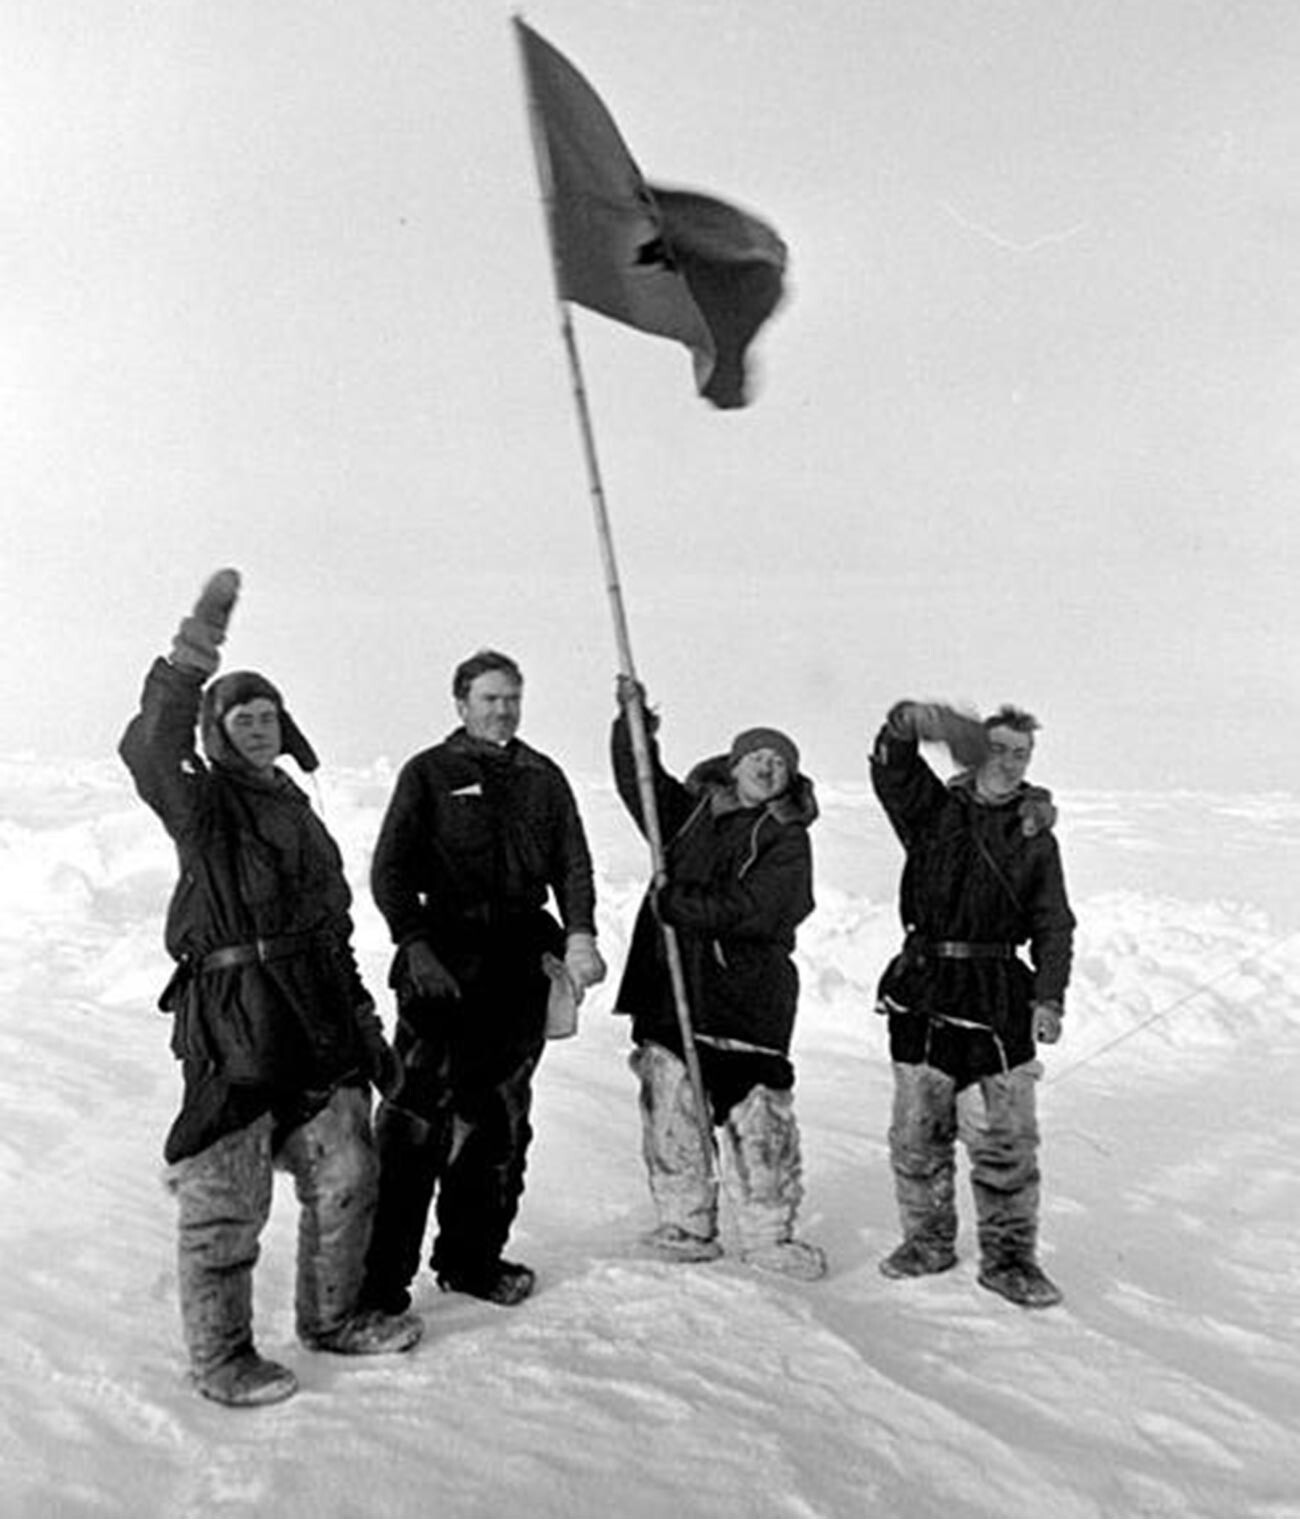 Expedicionarios del Polo Norte -1 en el Polo Norte